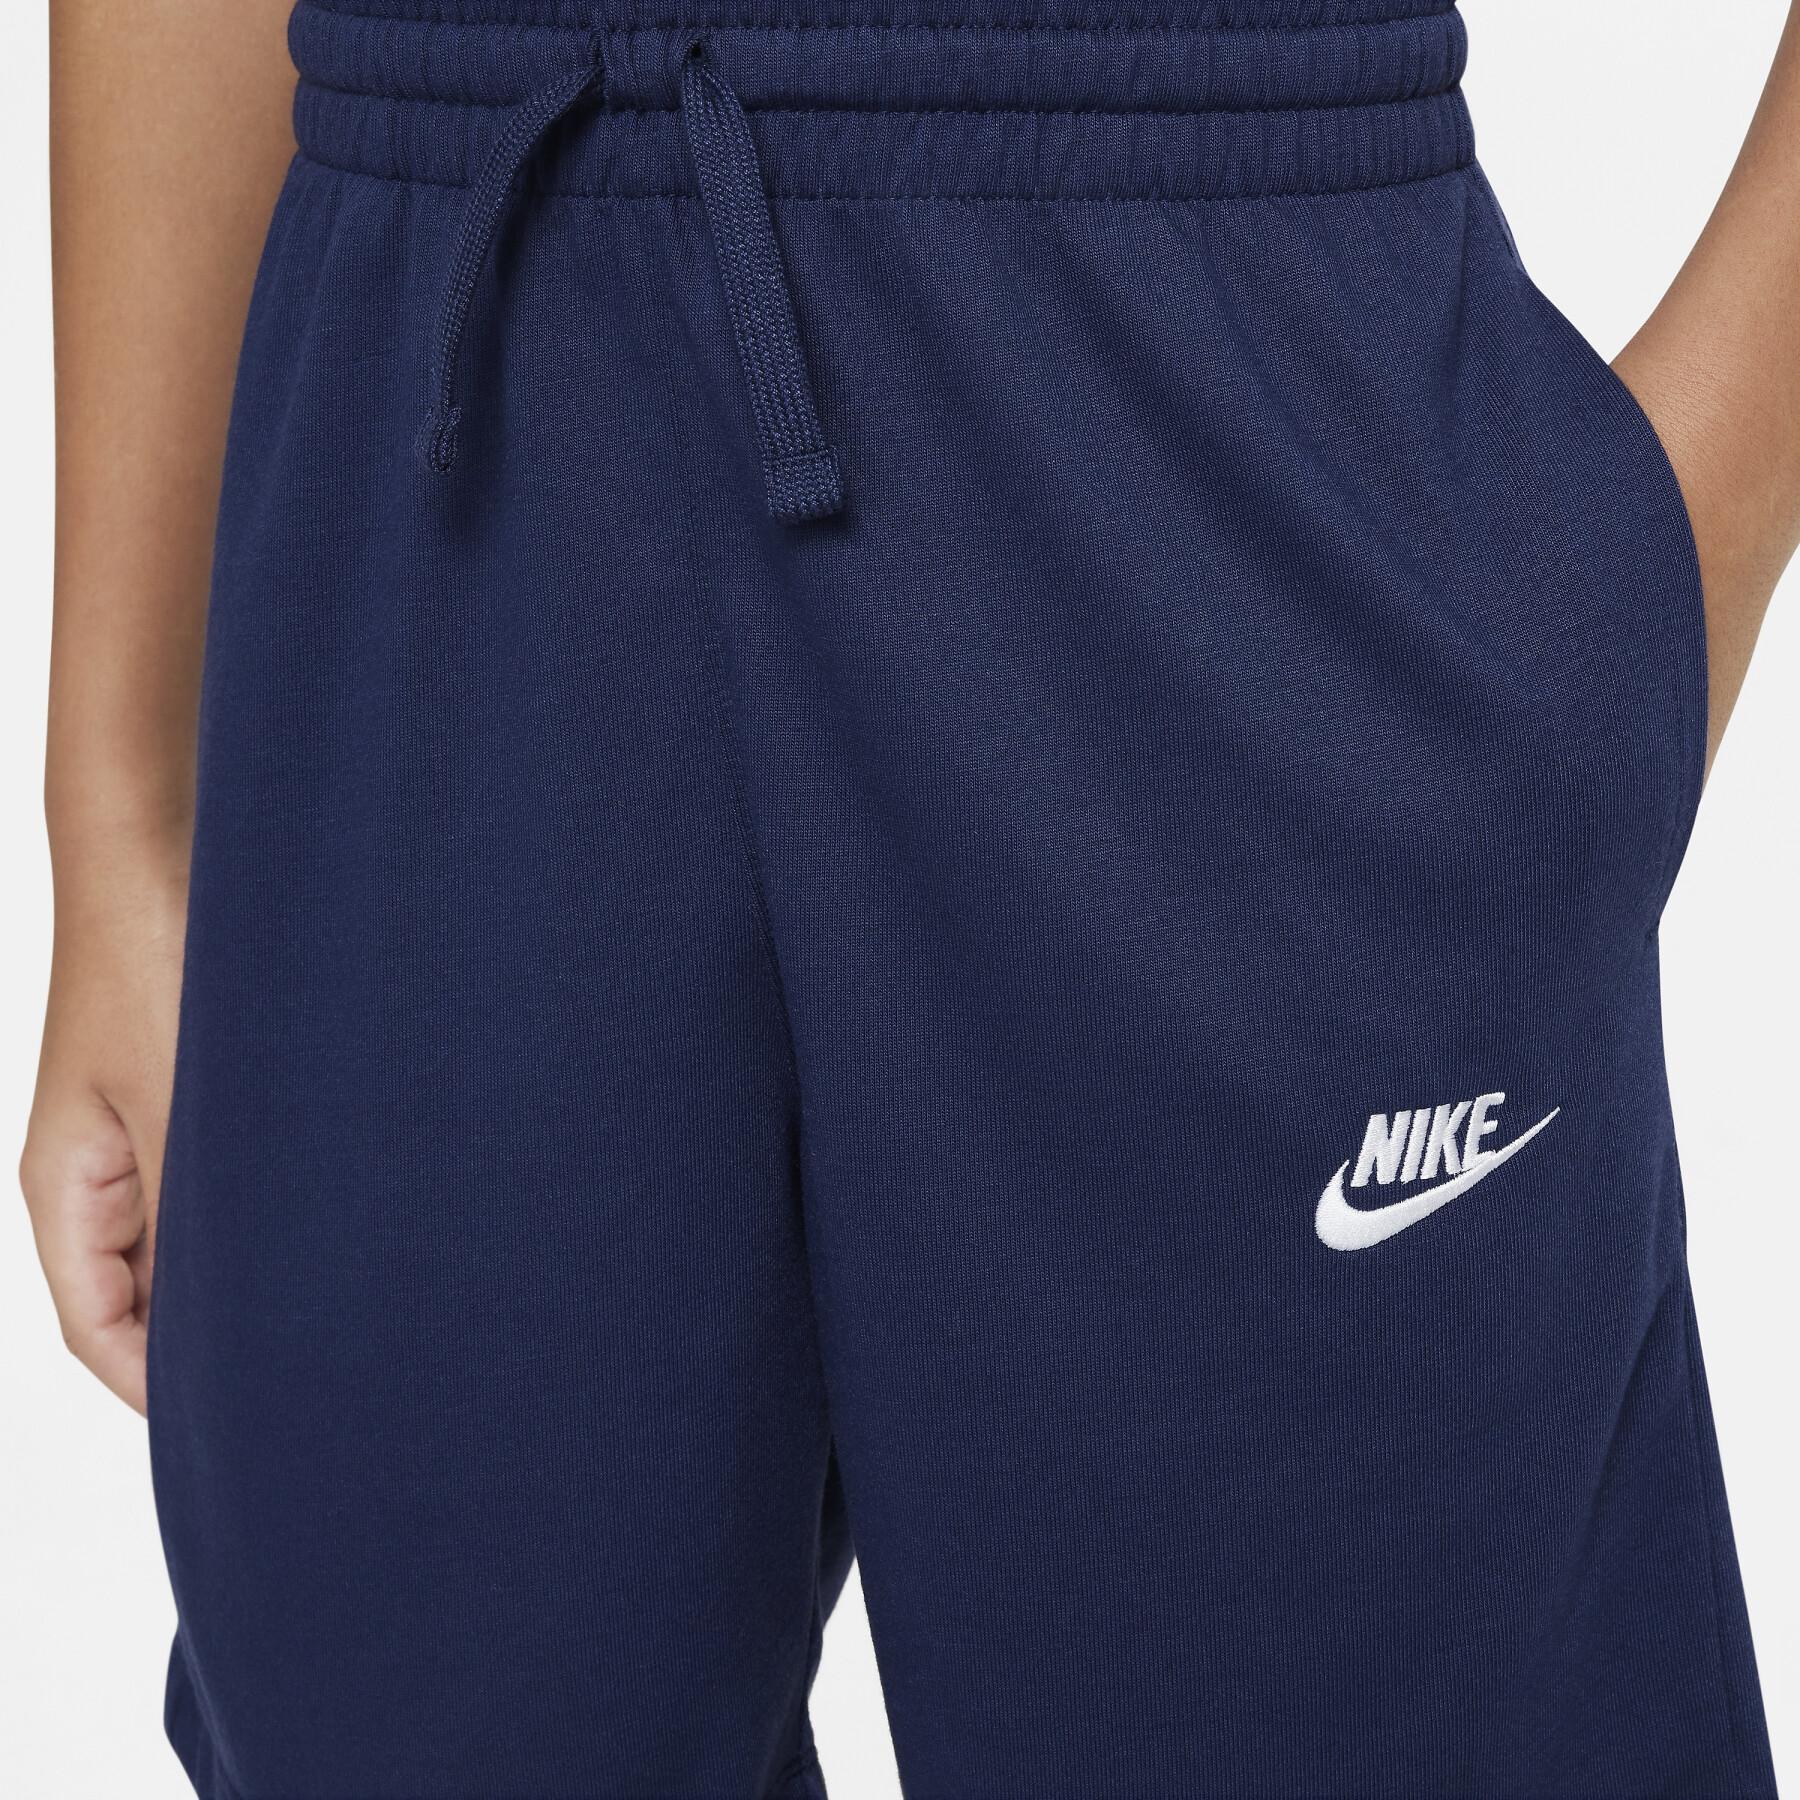 Children's shorts Nike